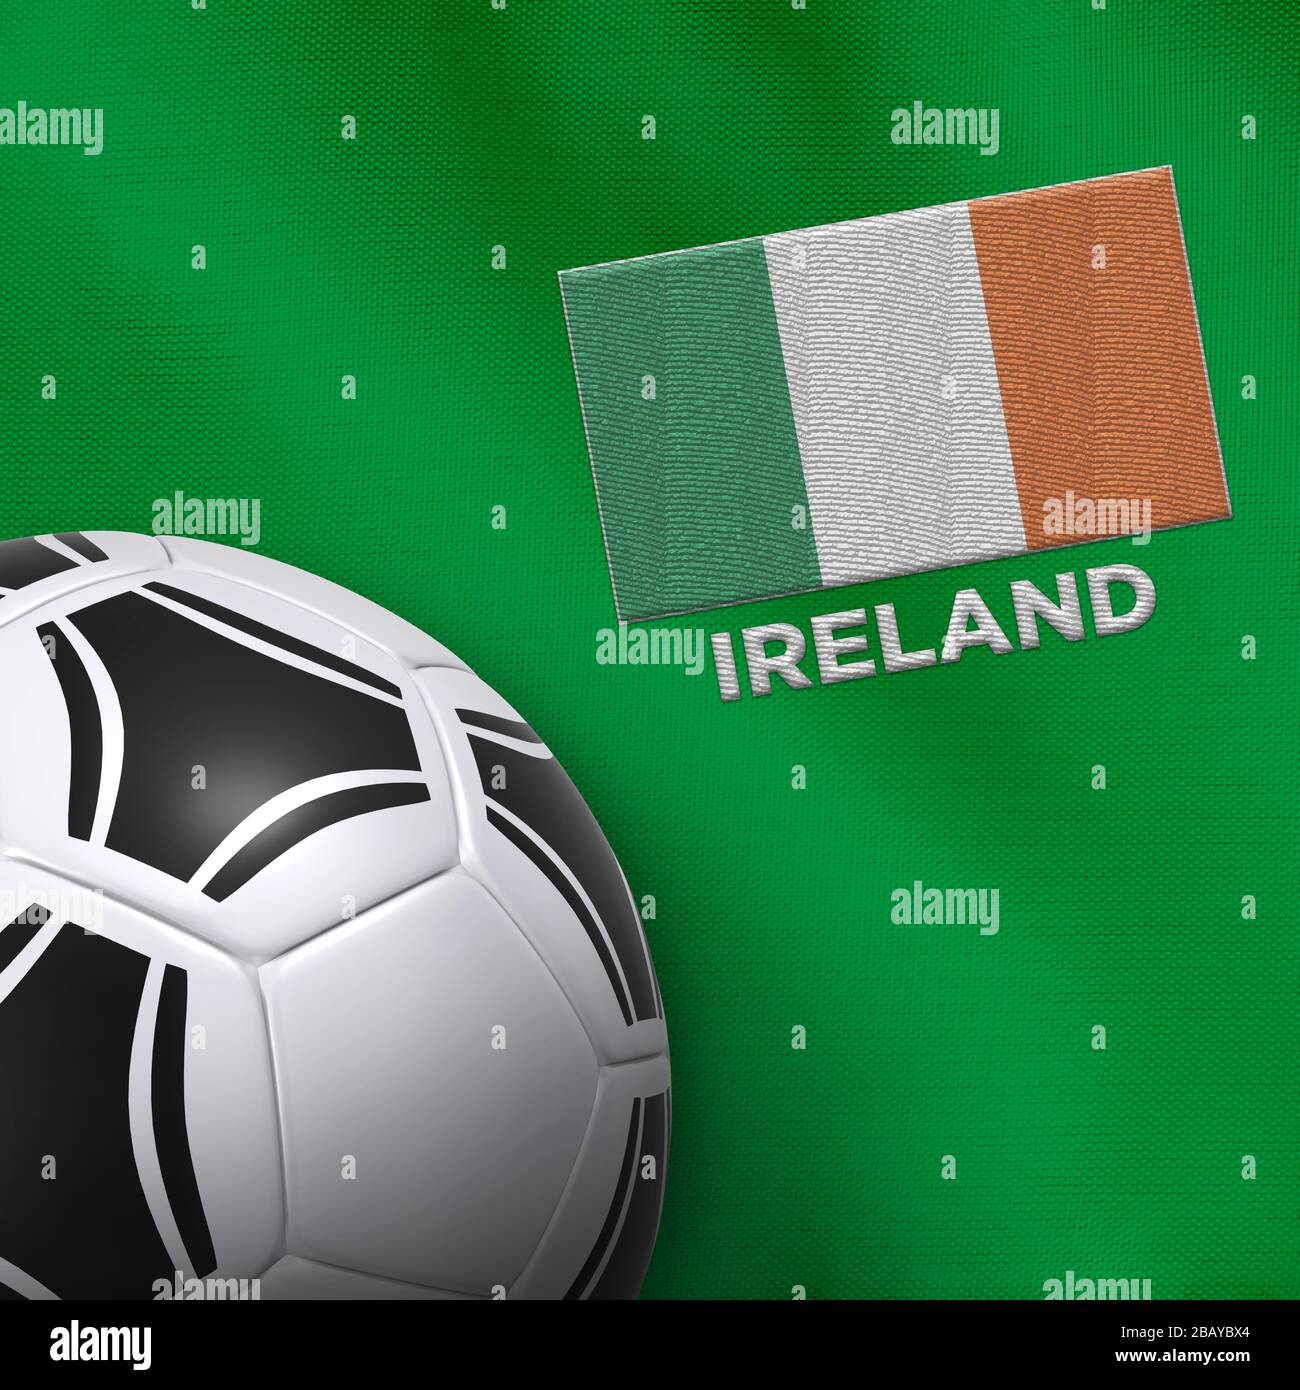 Fußball- und Nationalmannschaftstrikot von Irland. Stockfoto